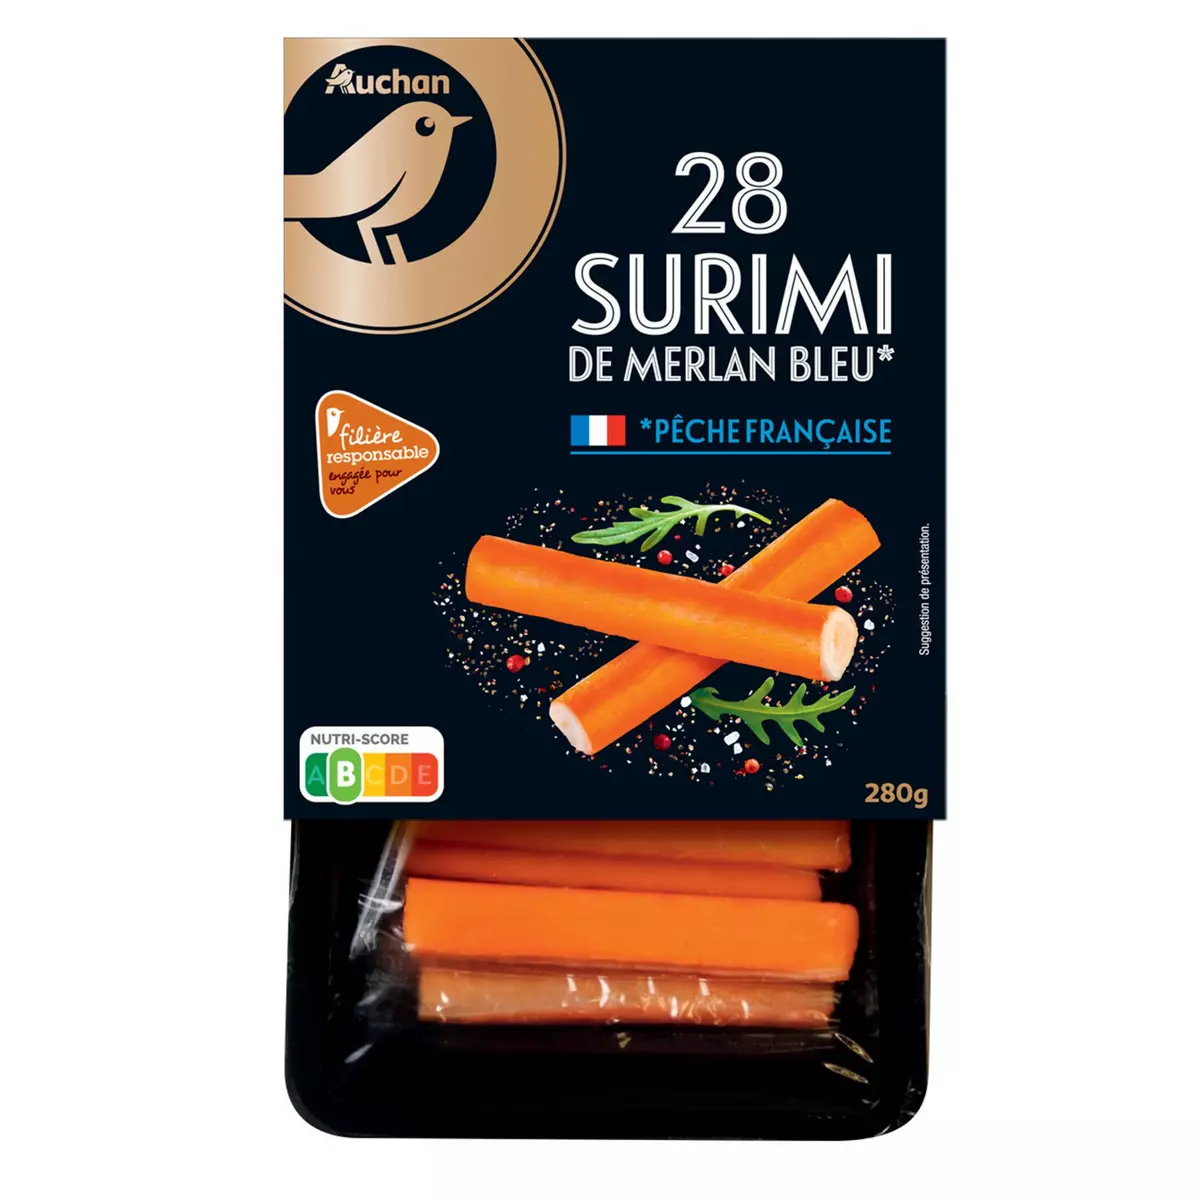 AUCHAN MMM! Bâtonnets de surimi de merlan bleu 28 pièces 280g